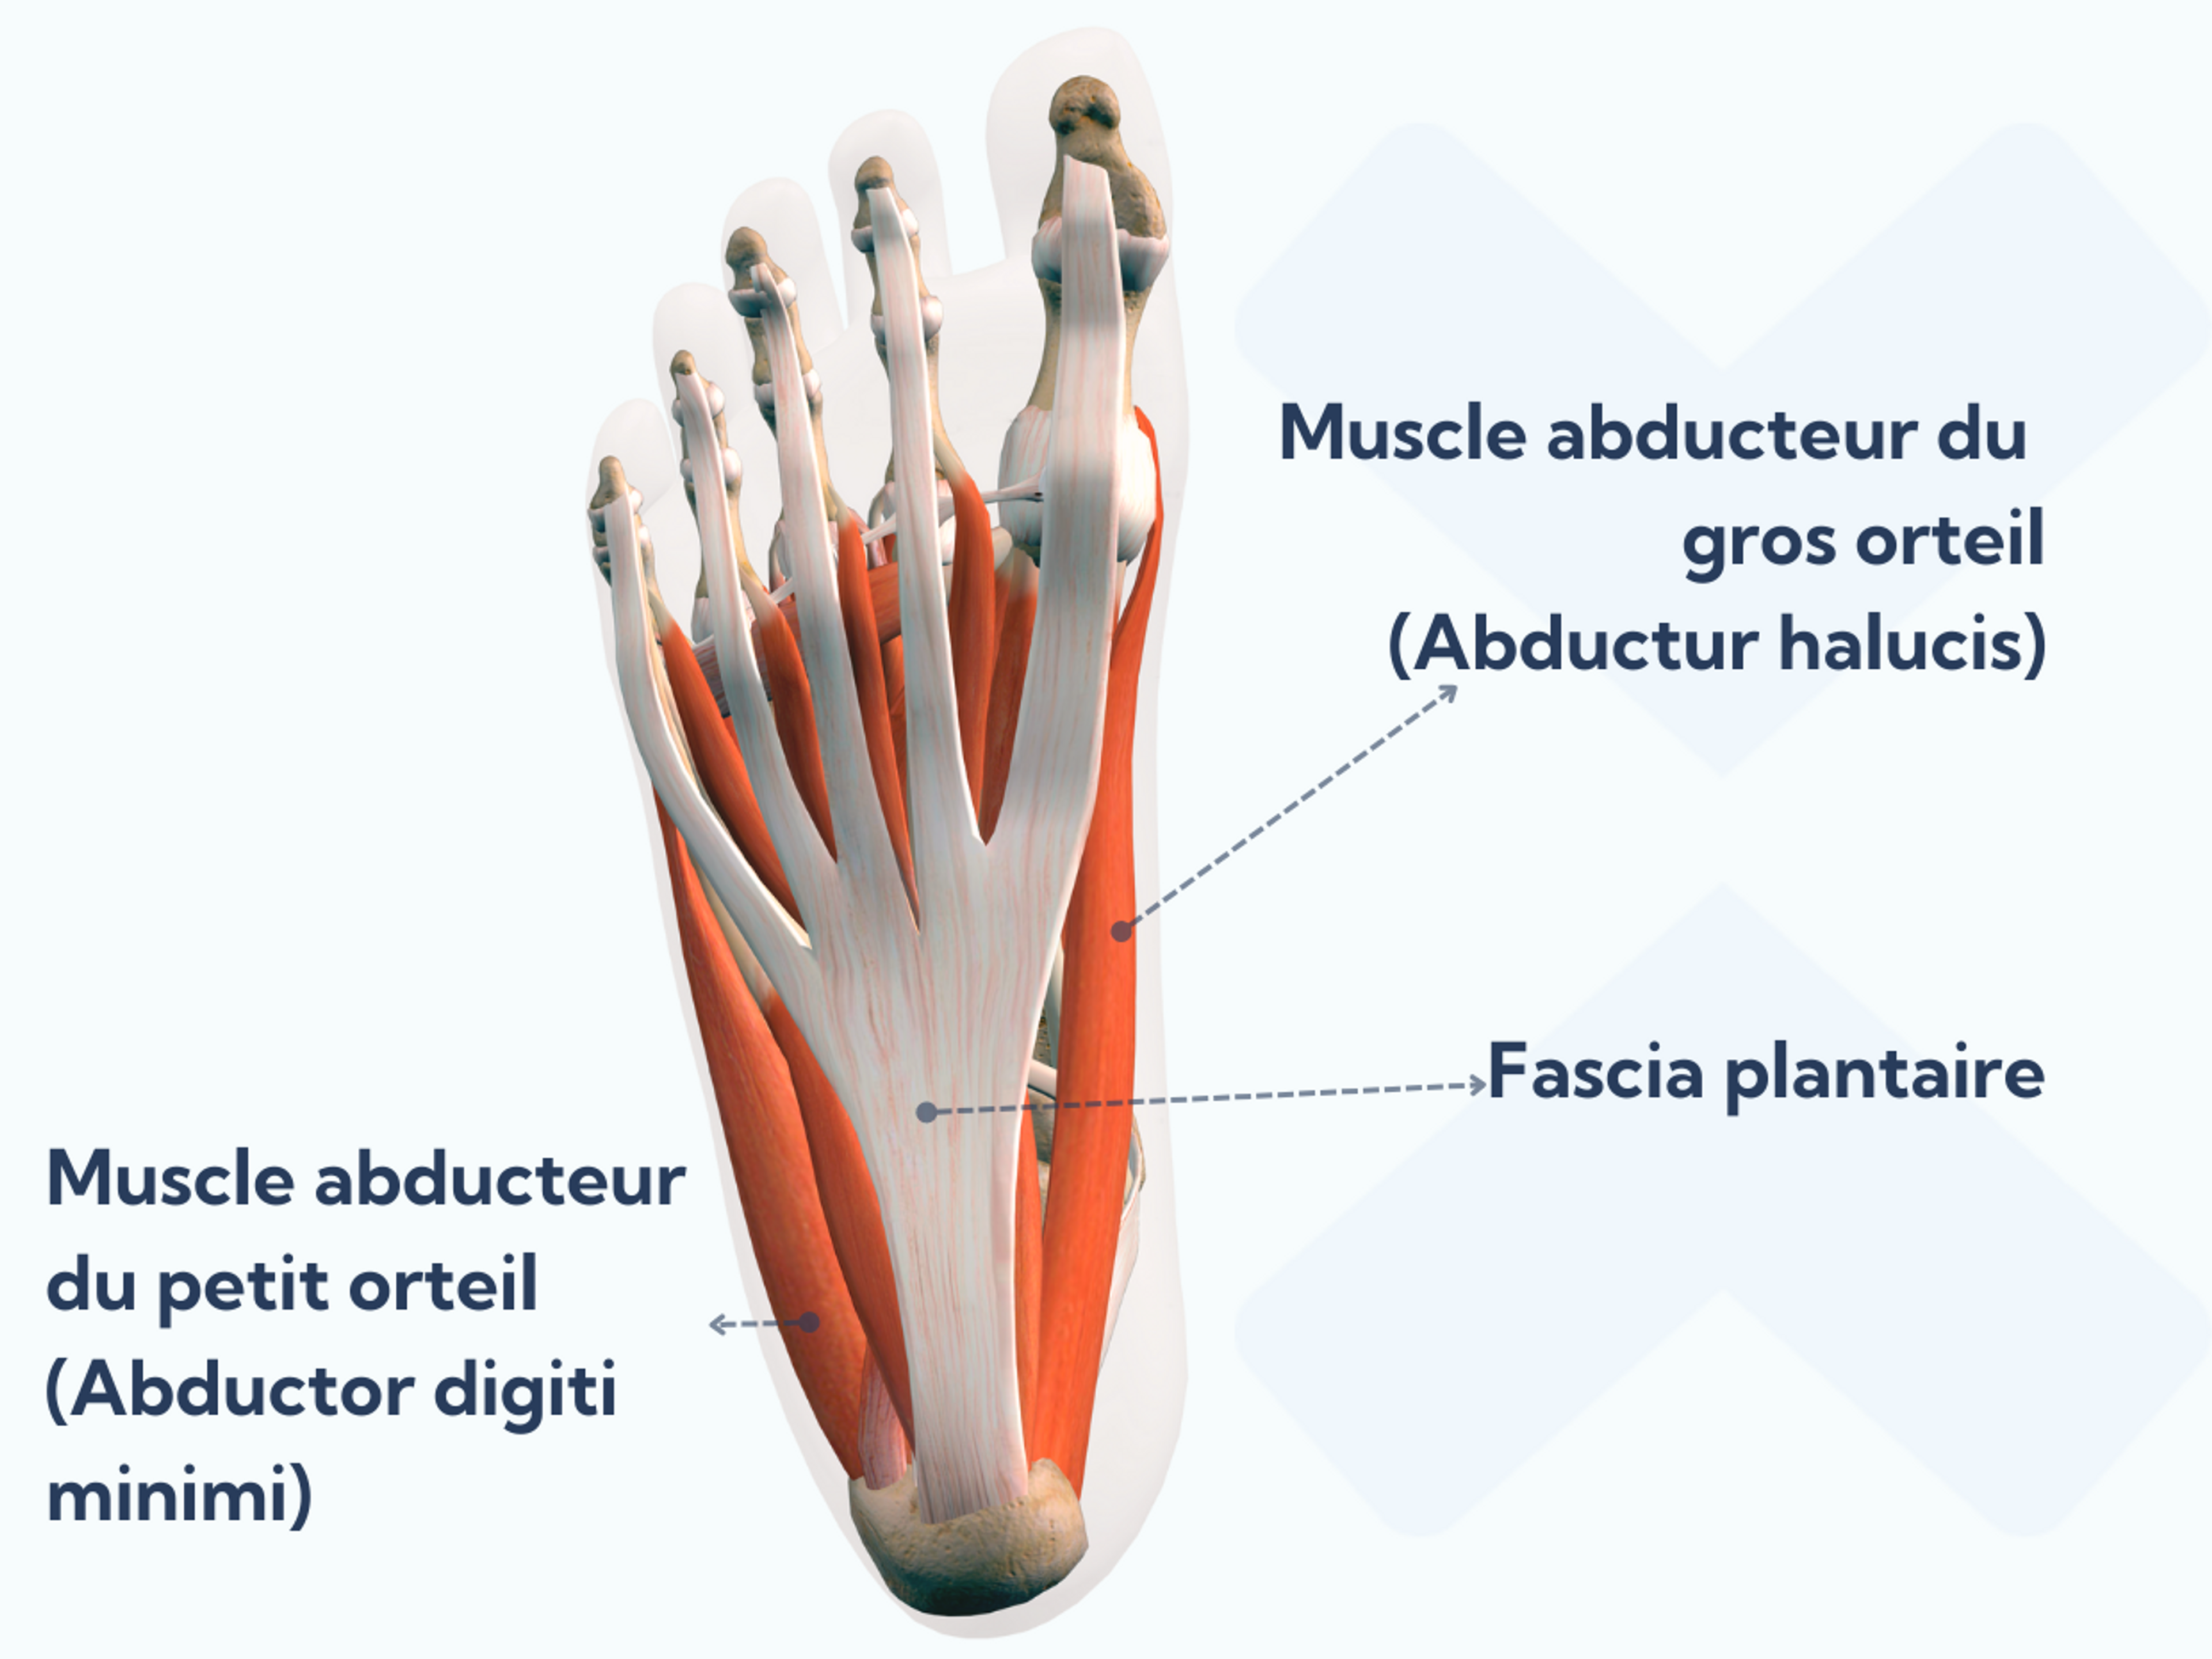 L'abducteur hallucis et l'abducteur digit minimi font partie de la couche superficielle des muscles intrinsèques du pied